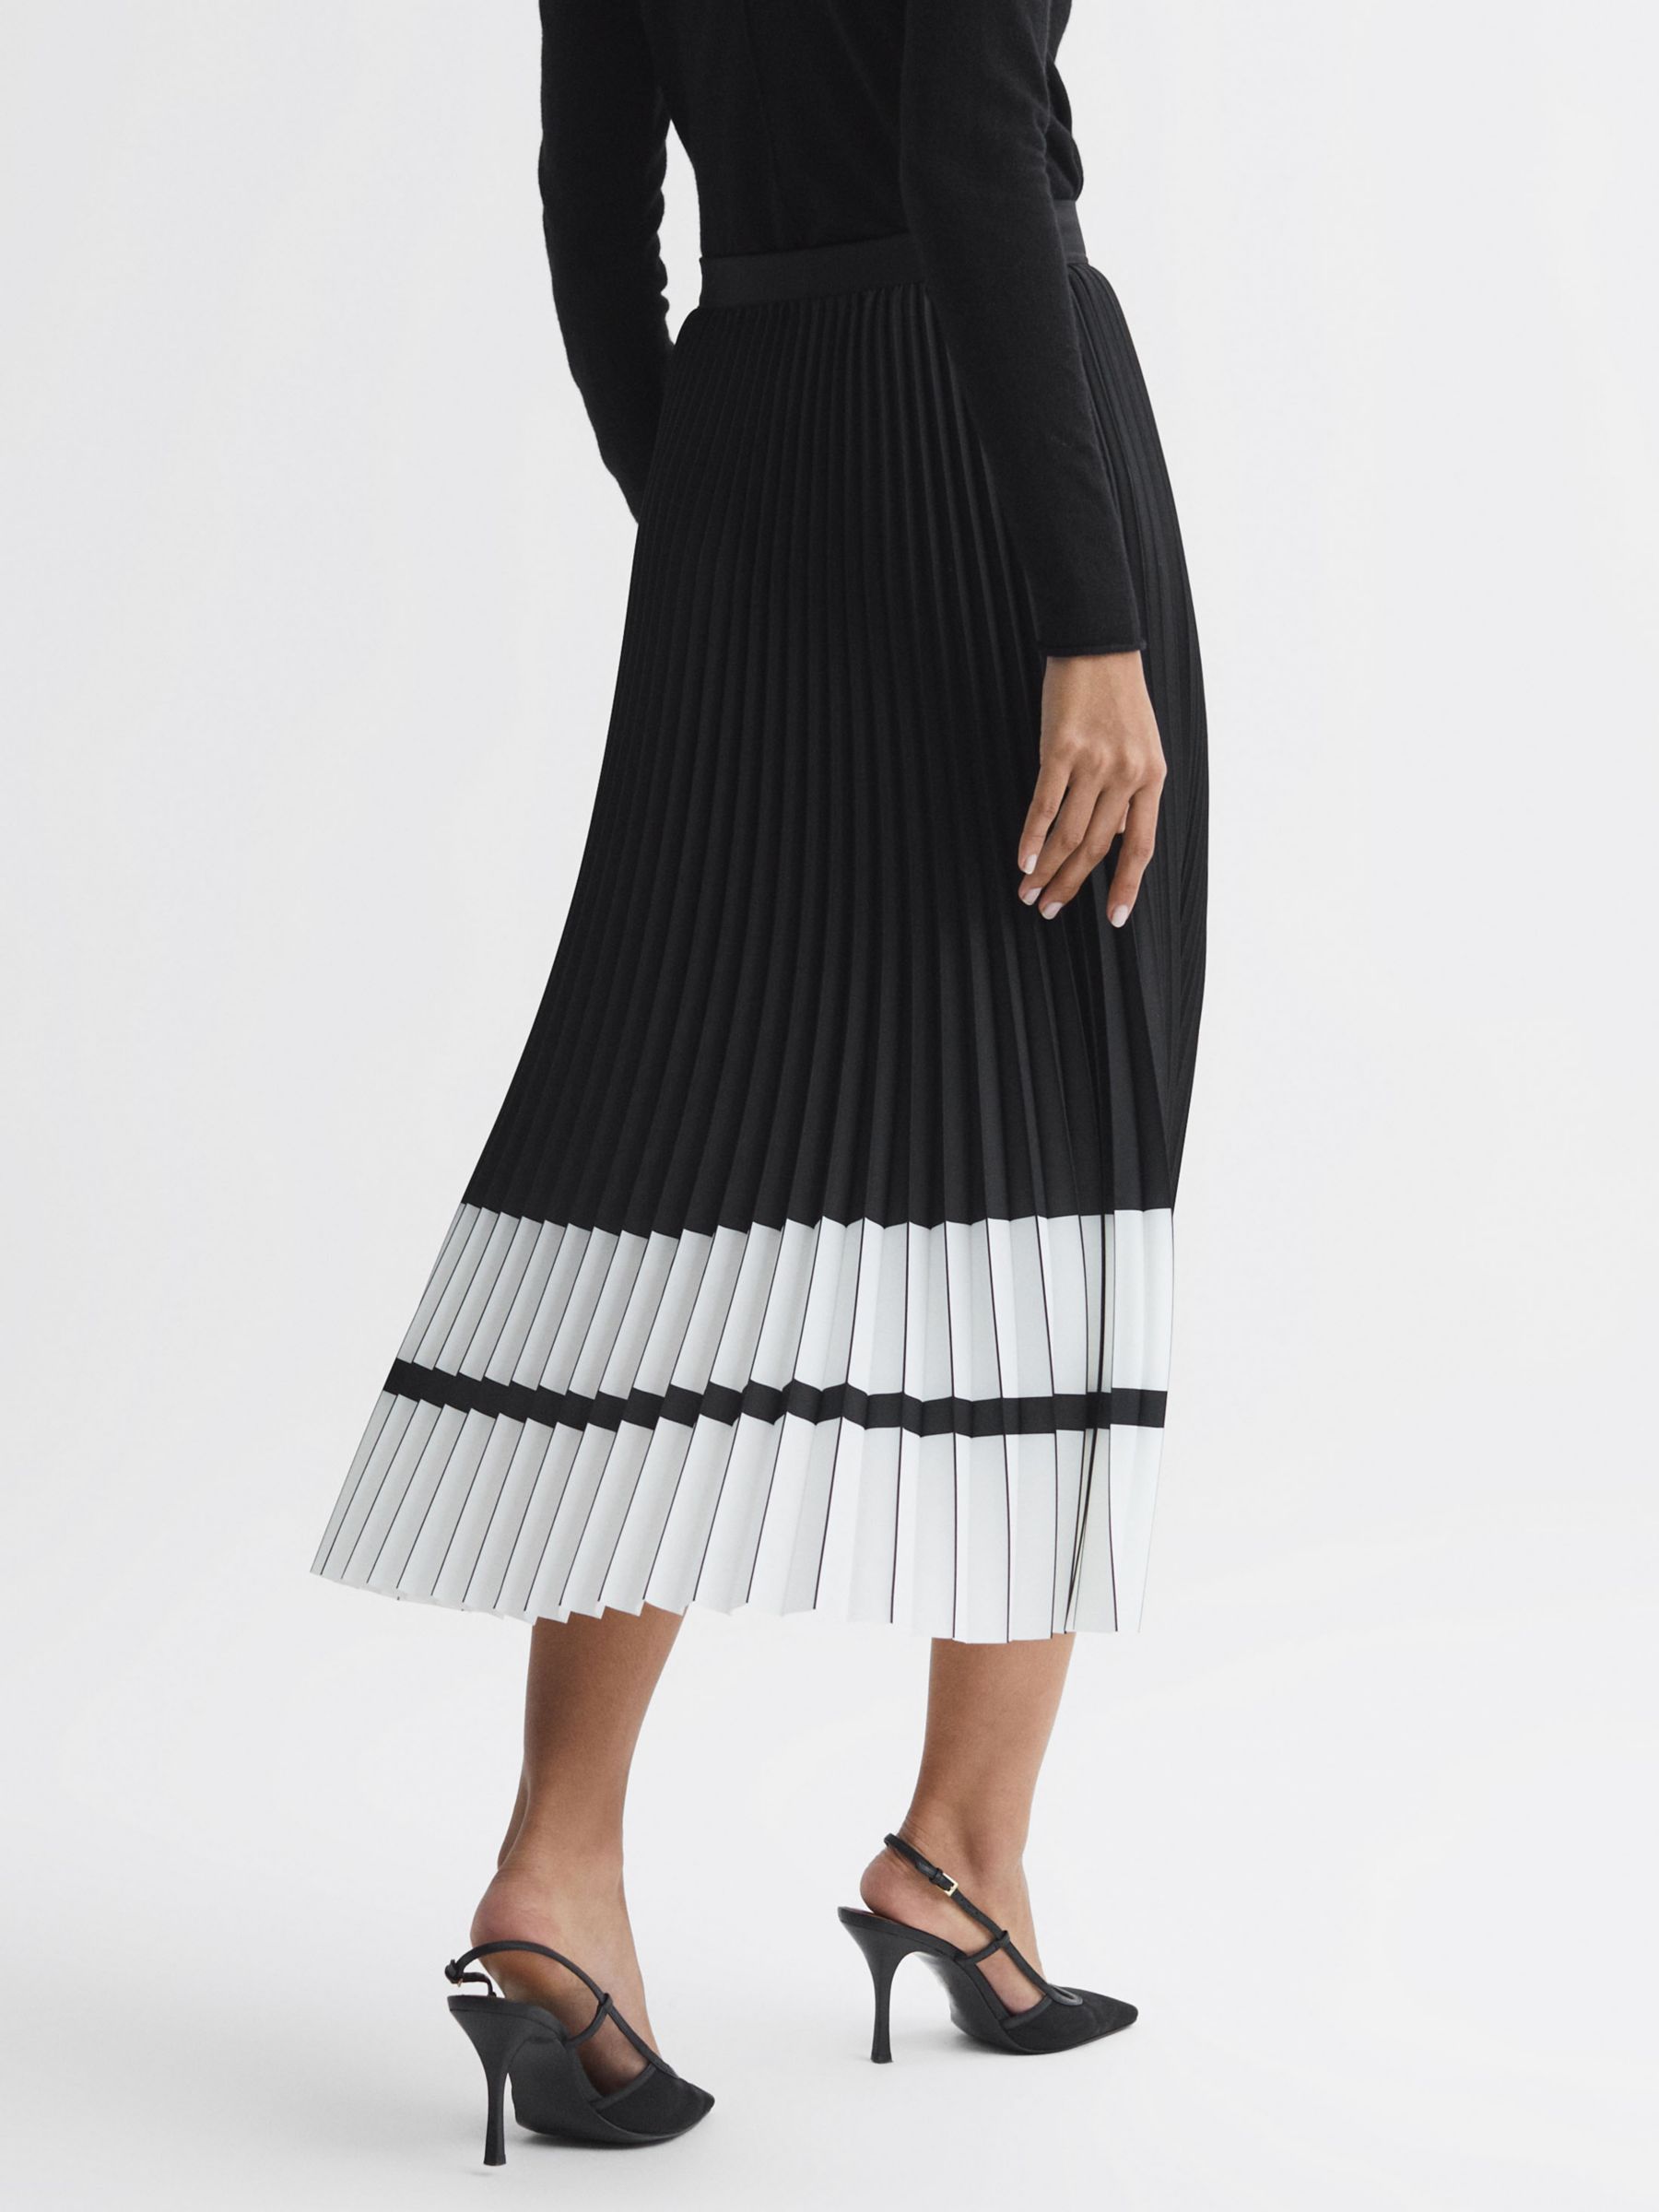 Reiss Marie Pleated Colour Block Midi Skirt, Black/White, 14